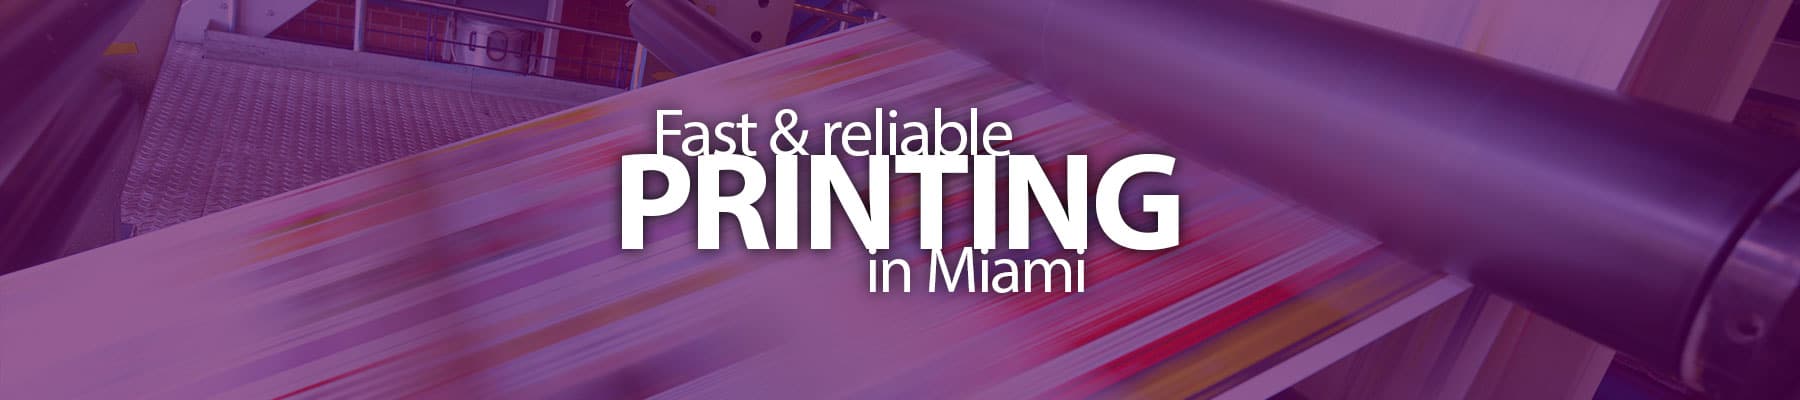 Standard Business Card Printing in Miami - Printfever